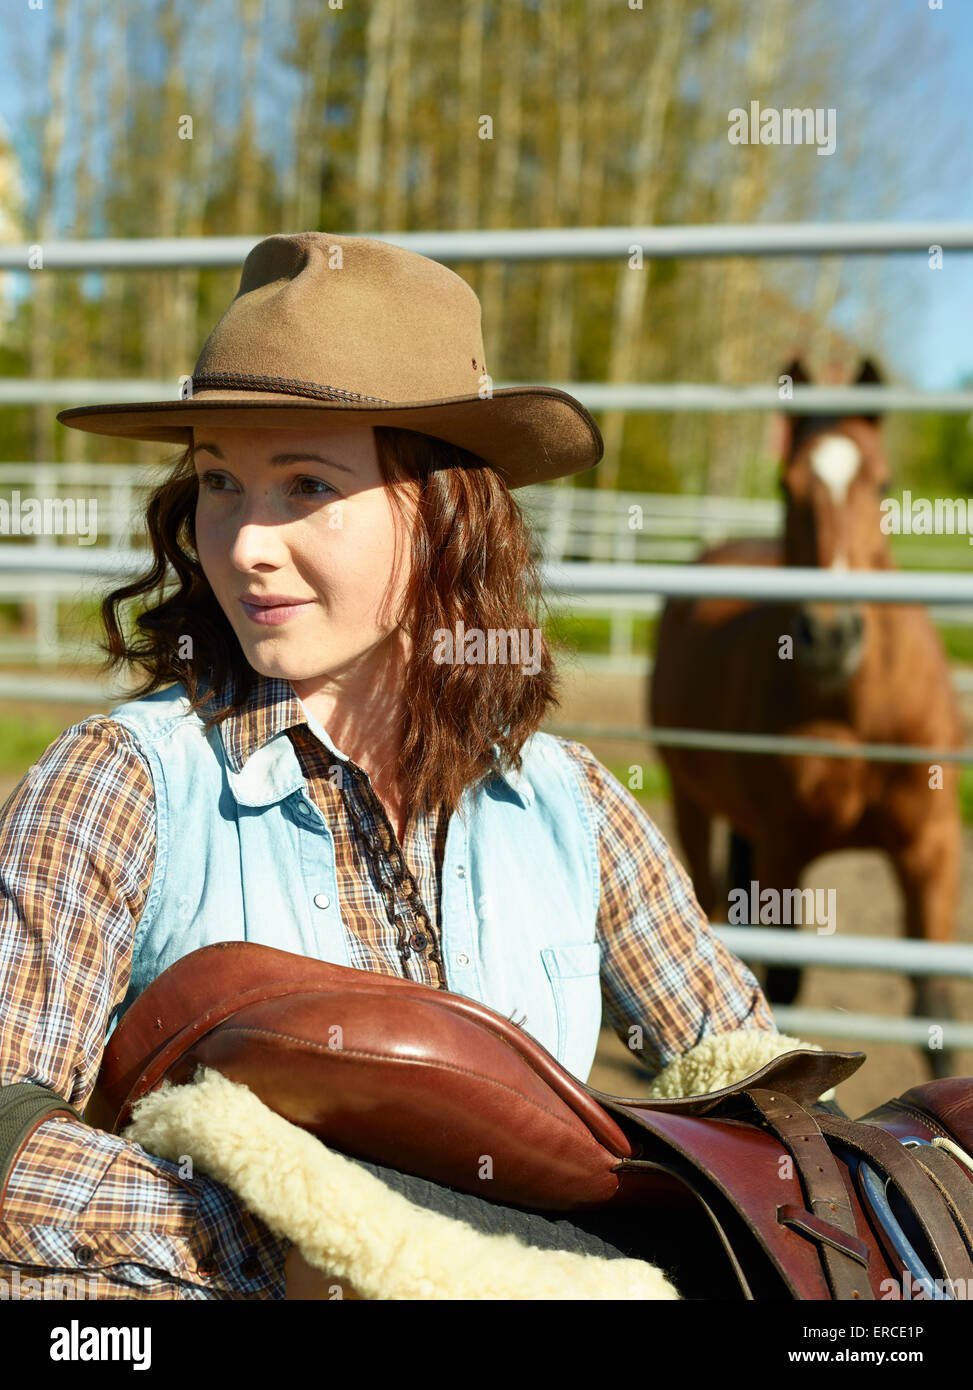 Cowgirl trägt einen Sattel, Pferd auf eine Koppel Stockfoto